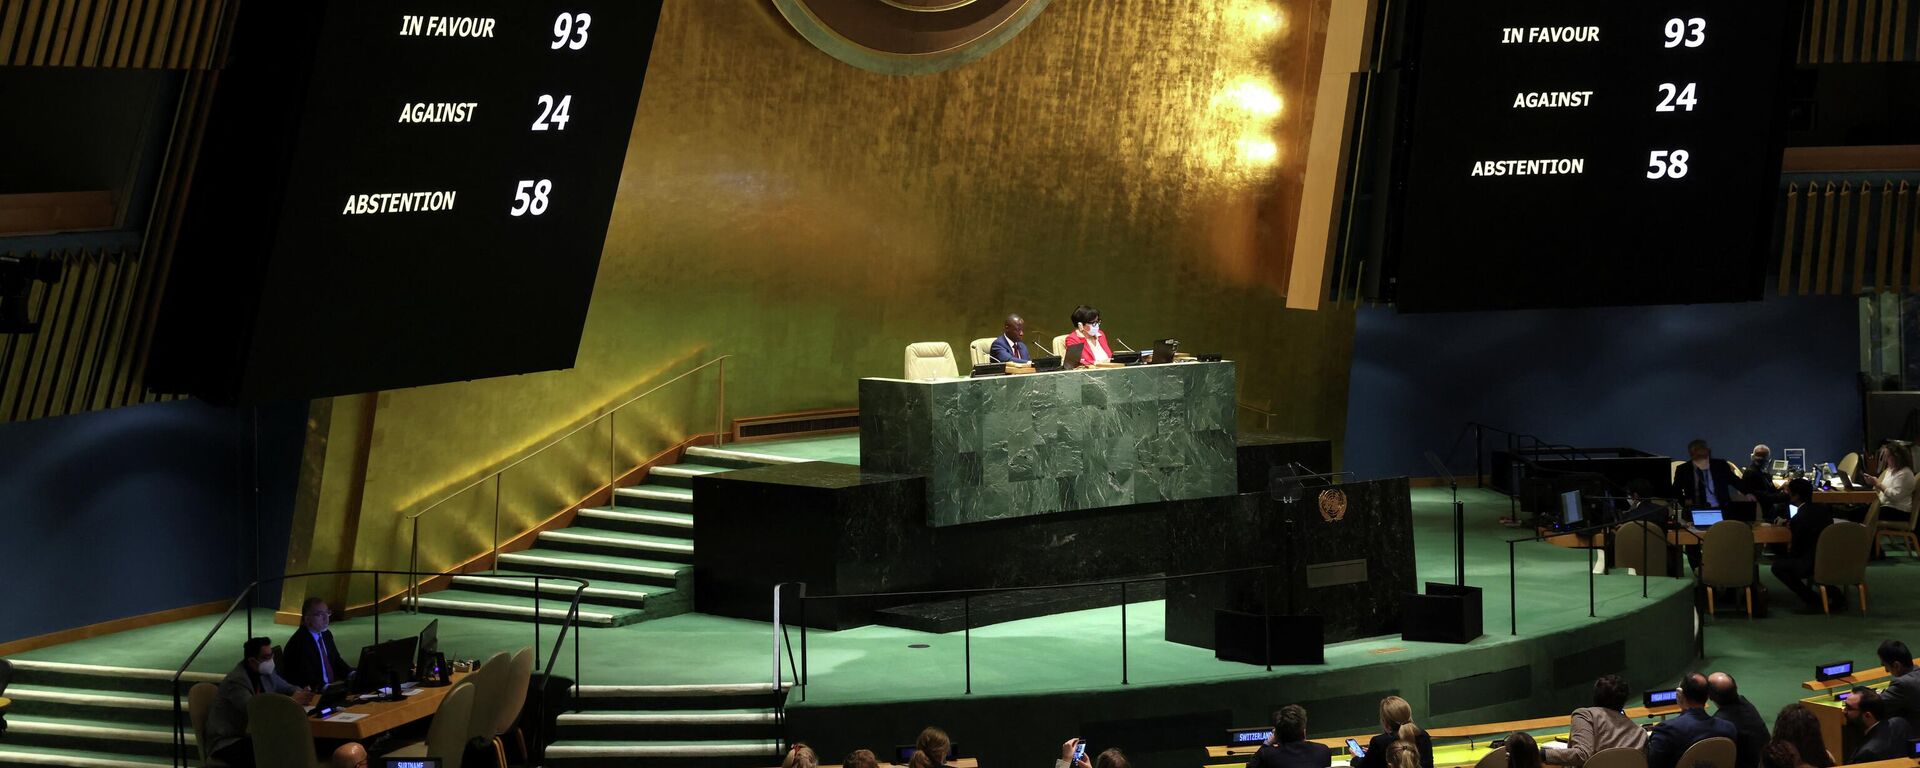 Balsavimas JT Generalinėje Asamblėjoje dėl Rusijos dalyvavimo ŽTT sustabdymo - Sputnik Lietuva, 1920, 07.04.2022